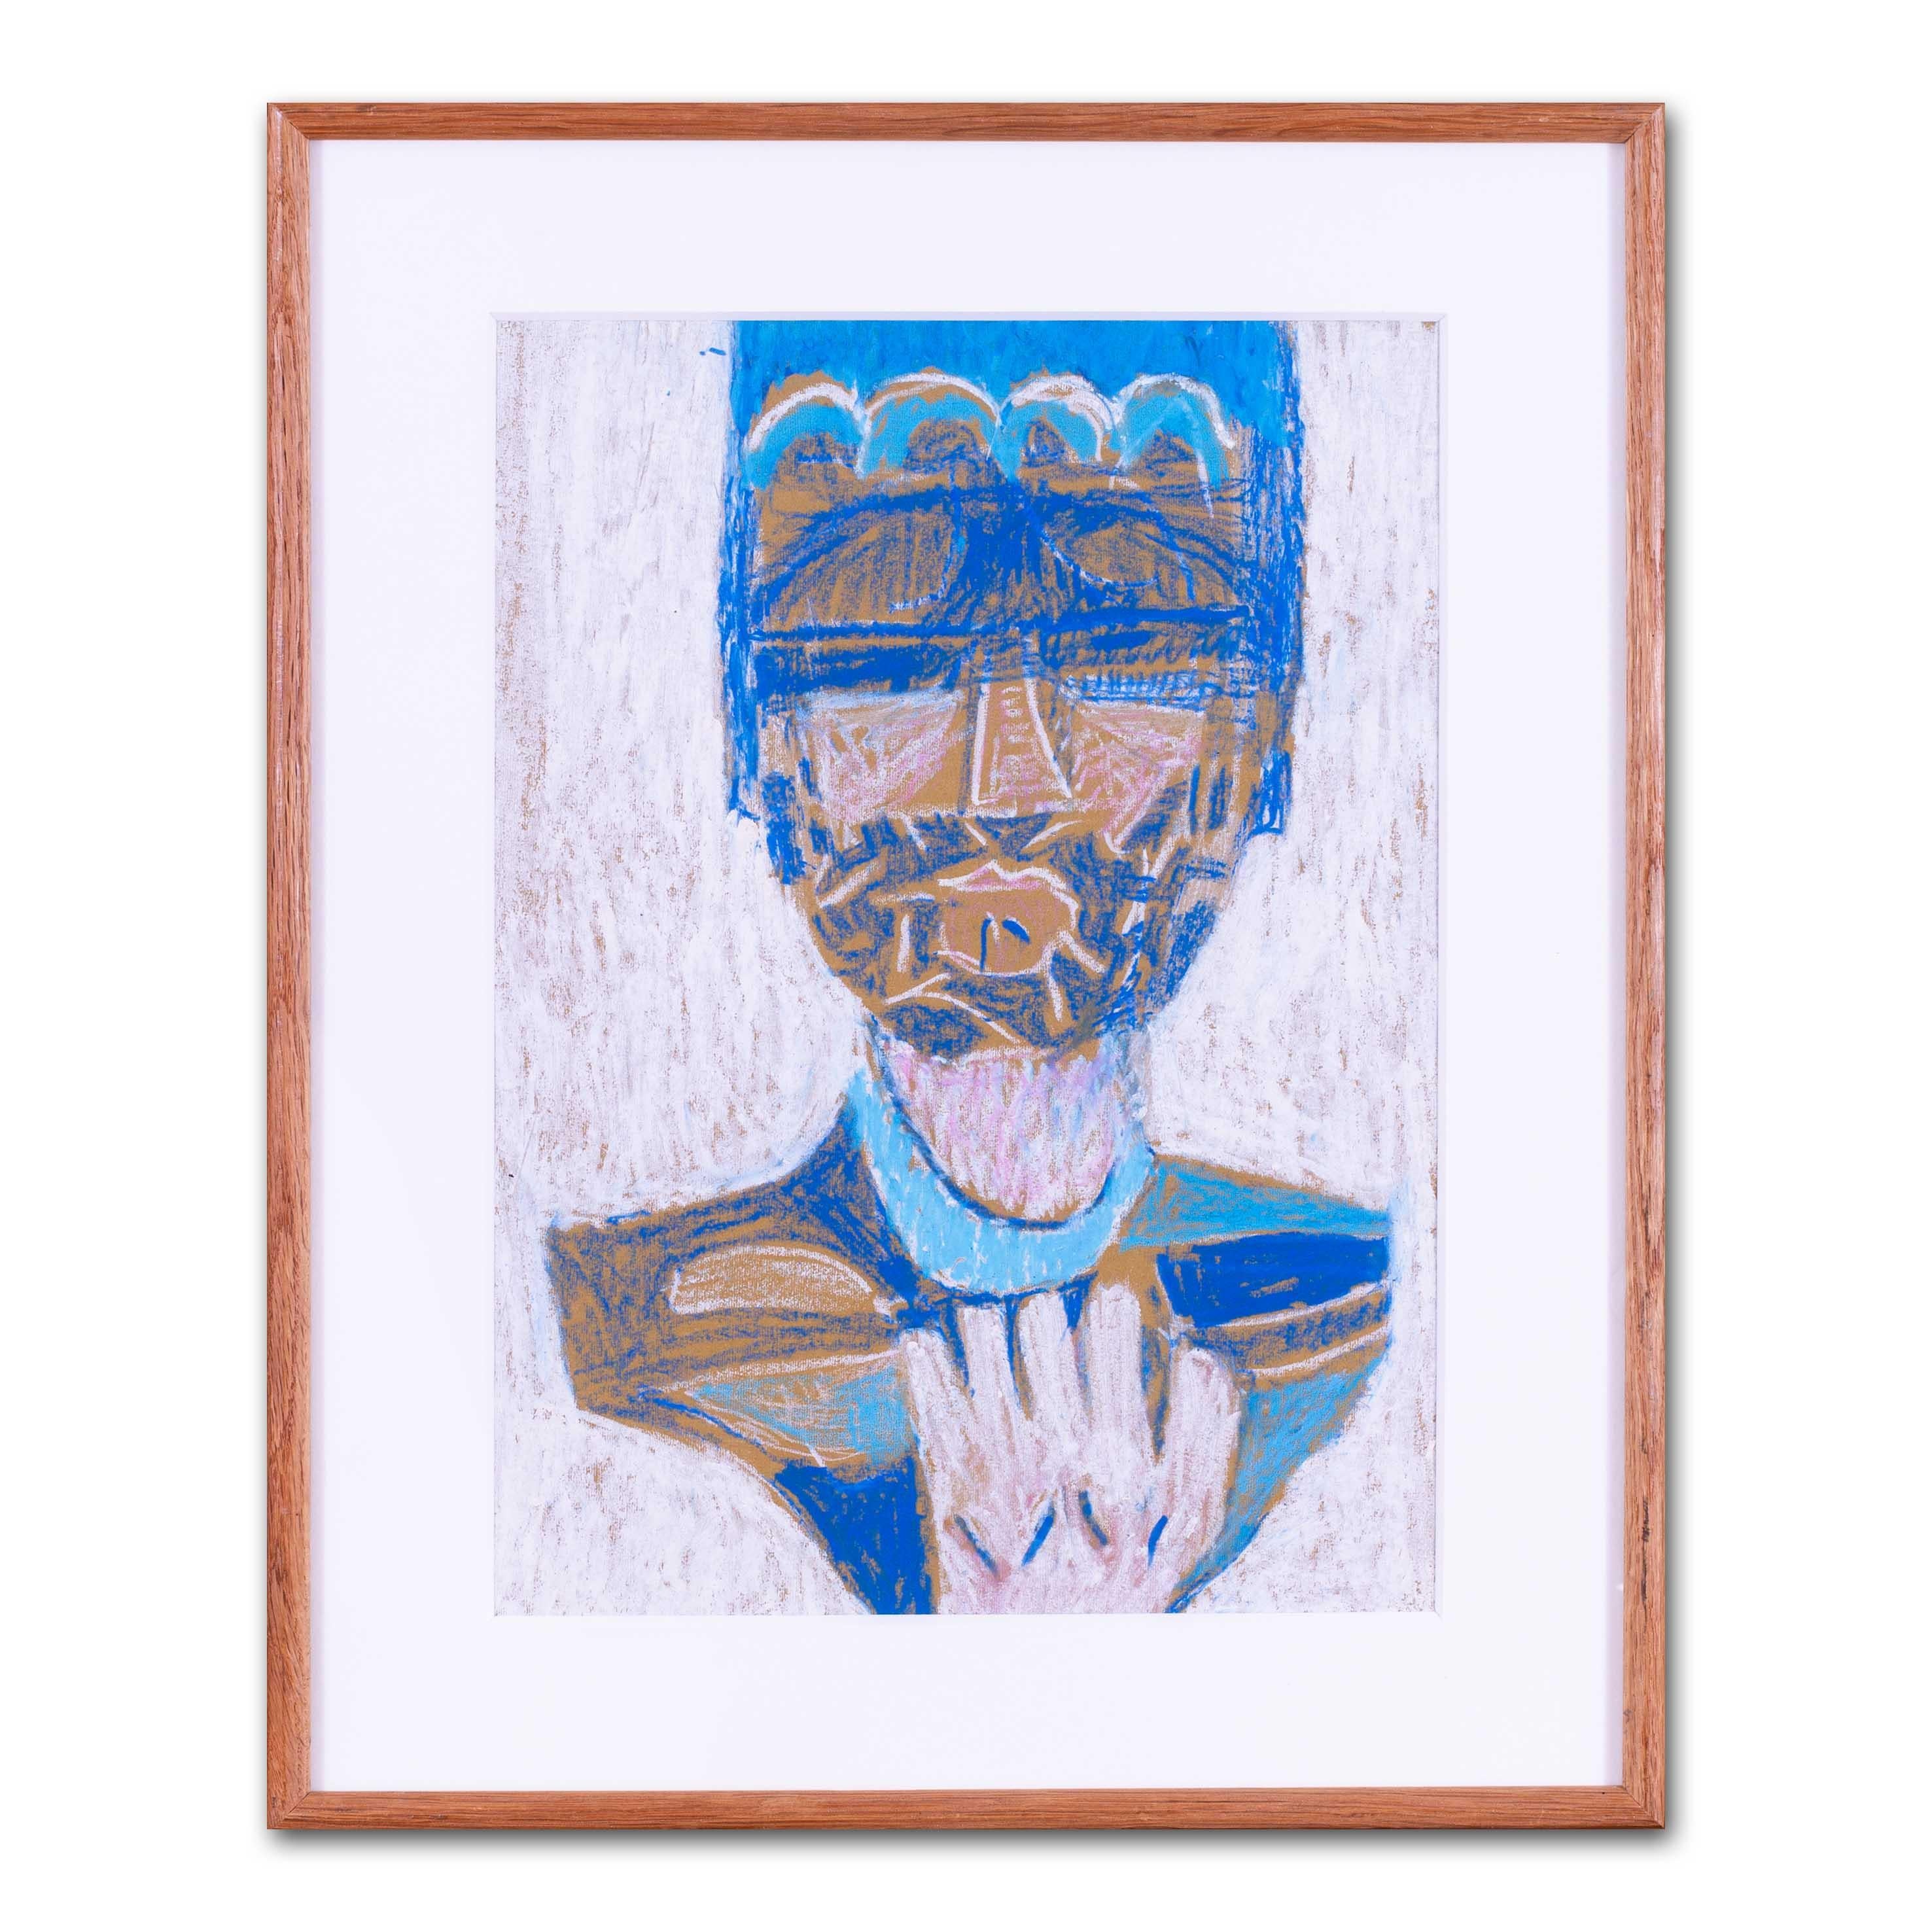 Abstraktes mythologisches Porträt in Blau des modernen britischen Künstlers Ewart Johns